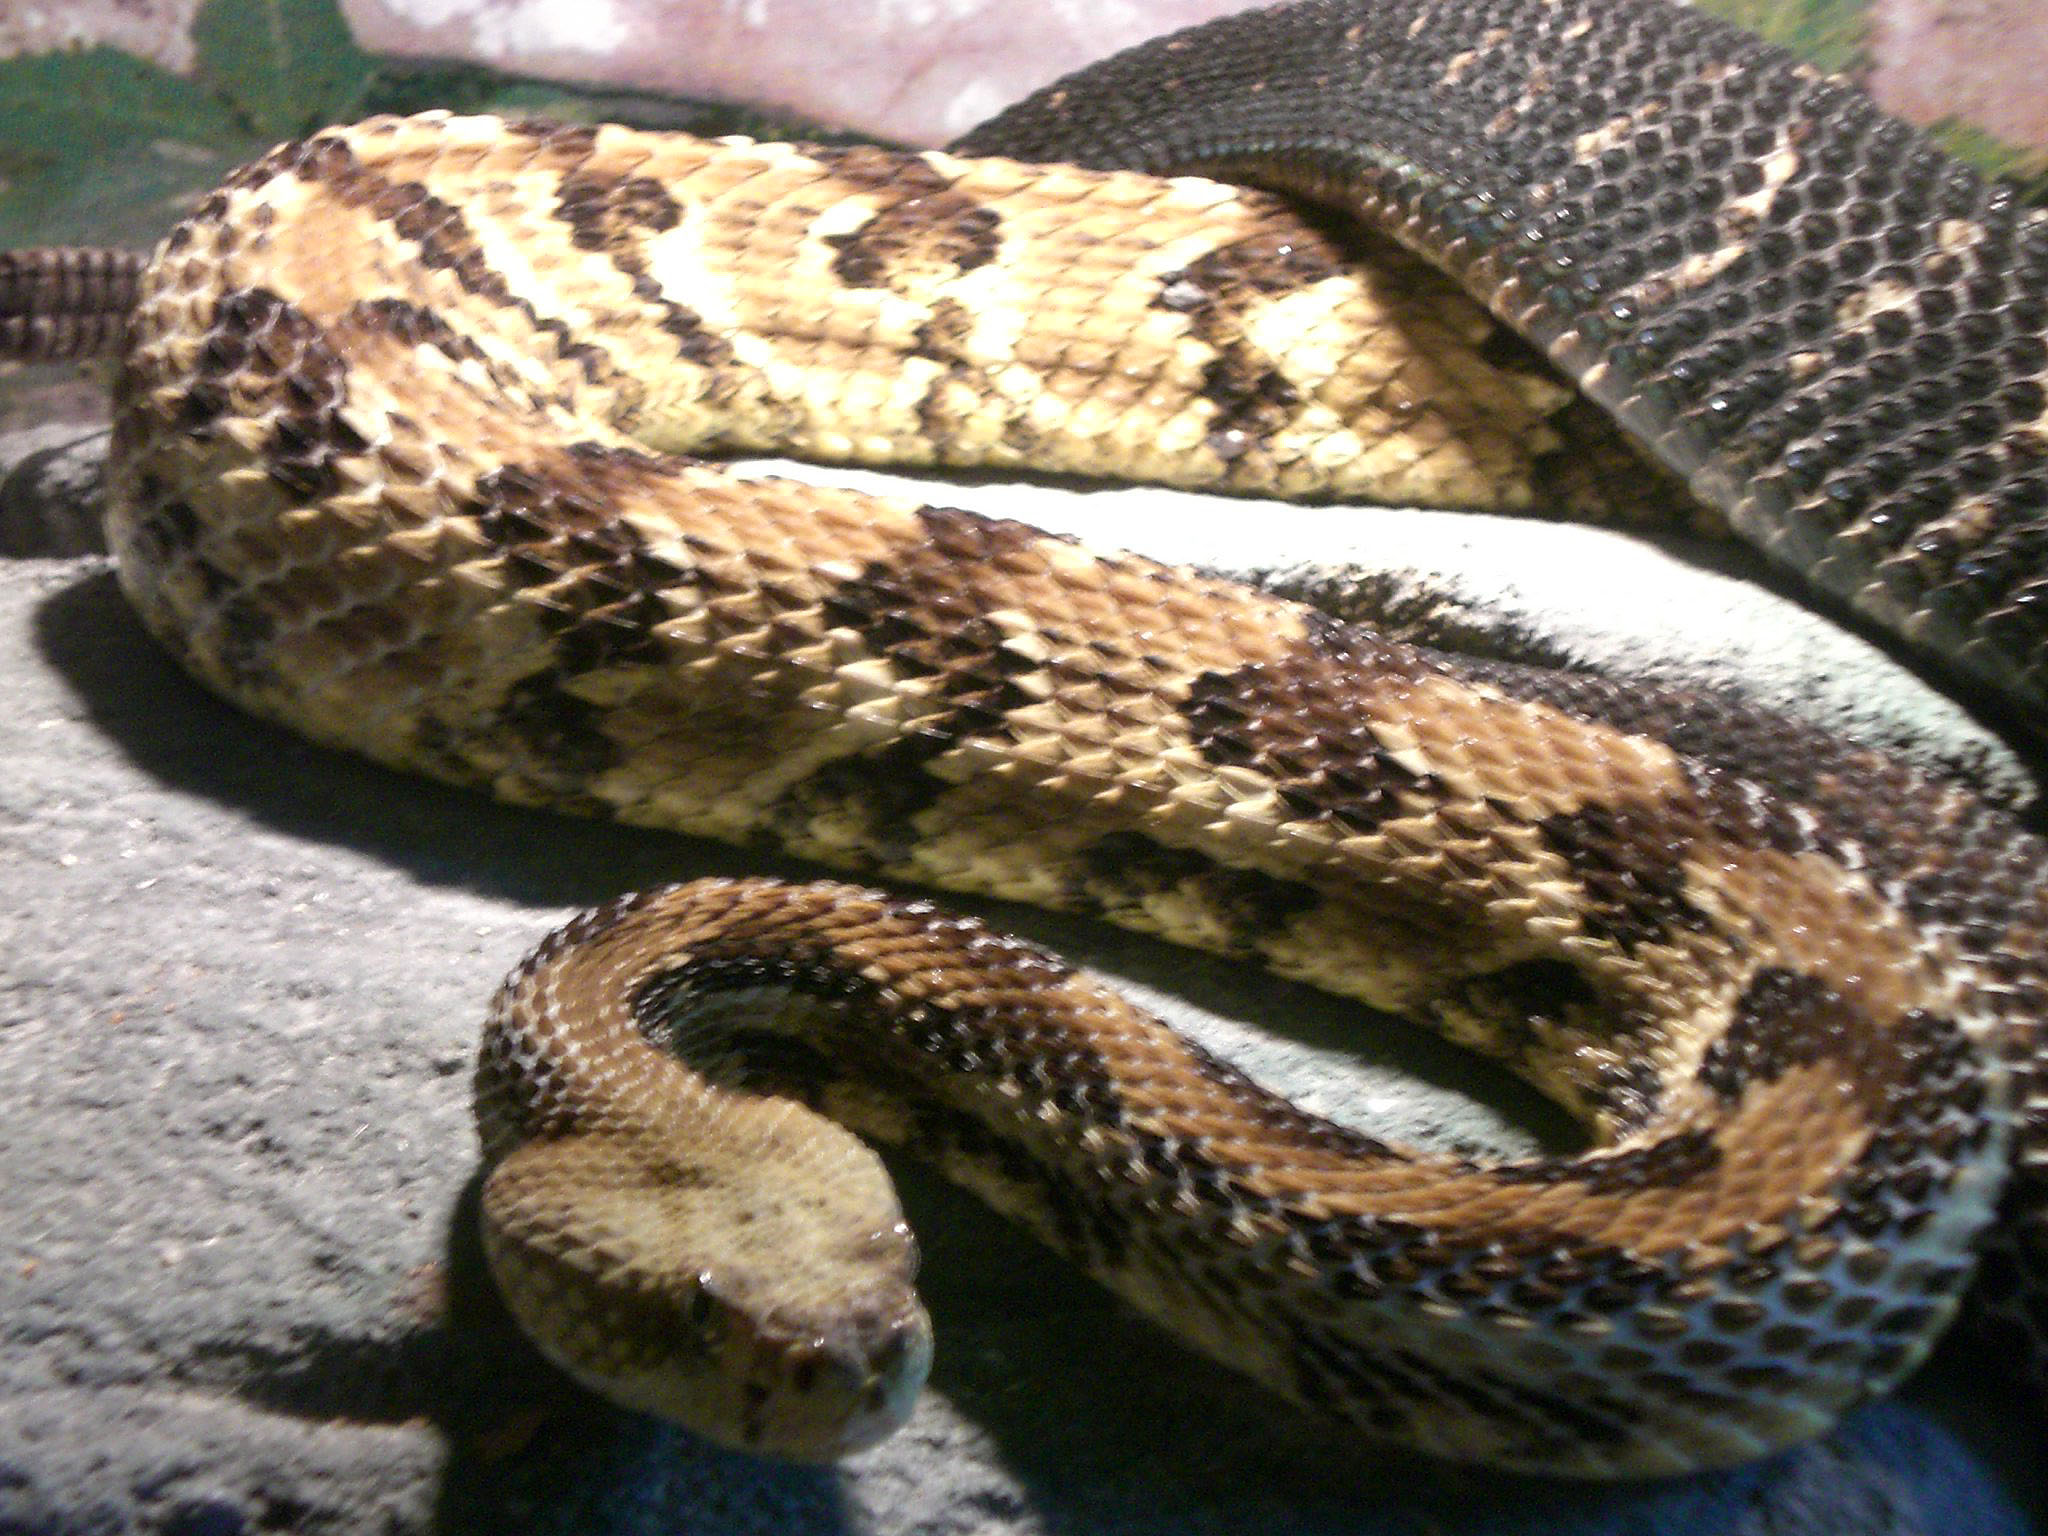 a large, snake like animal sitting on a stone slab